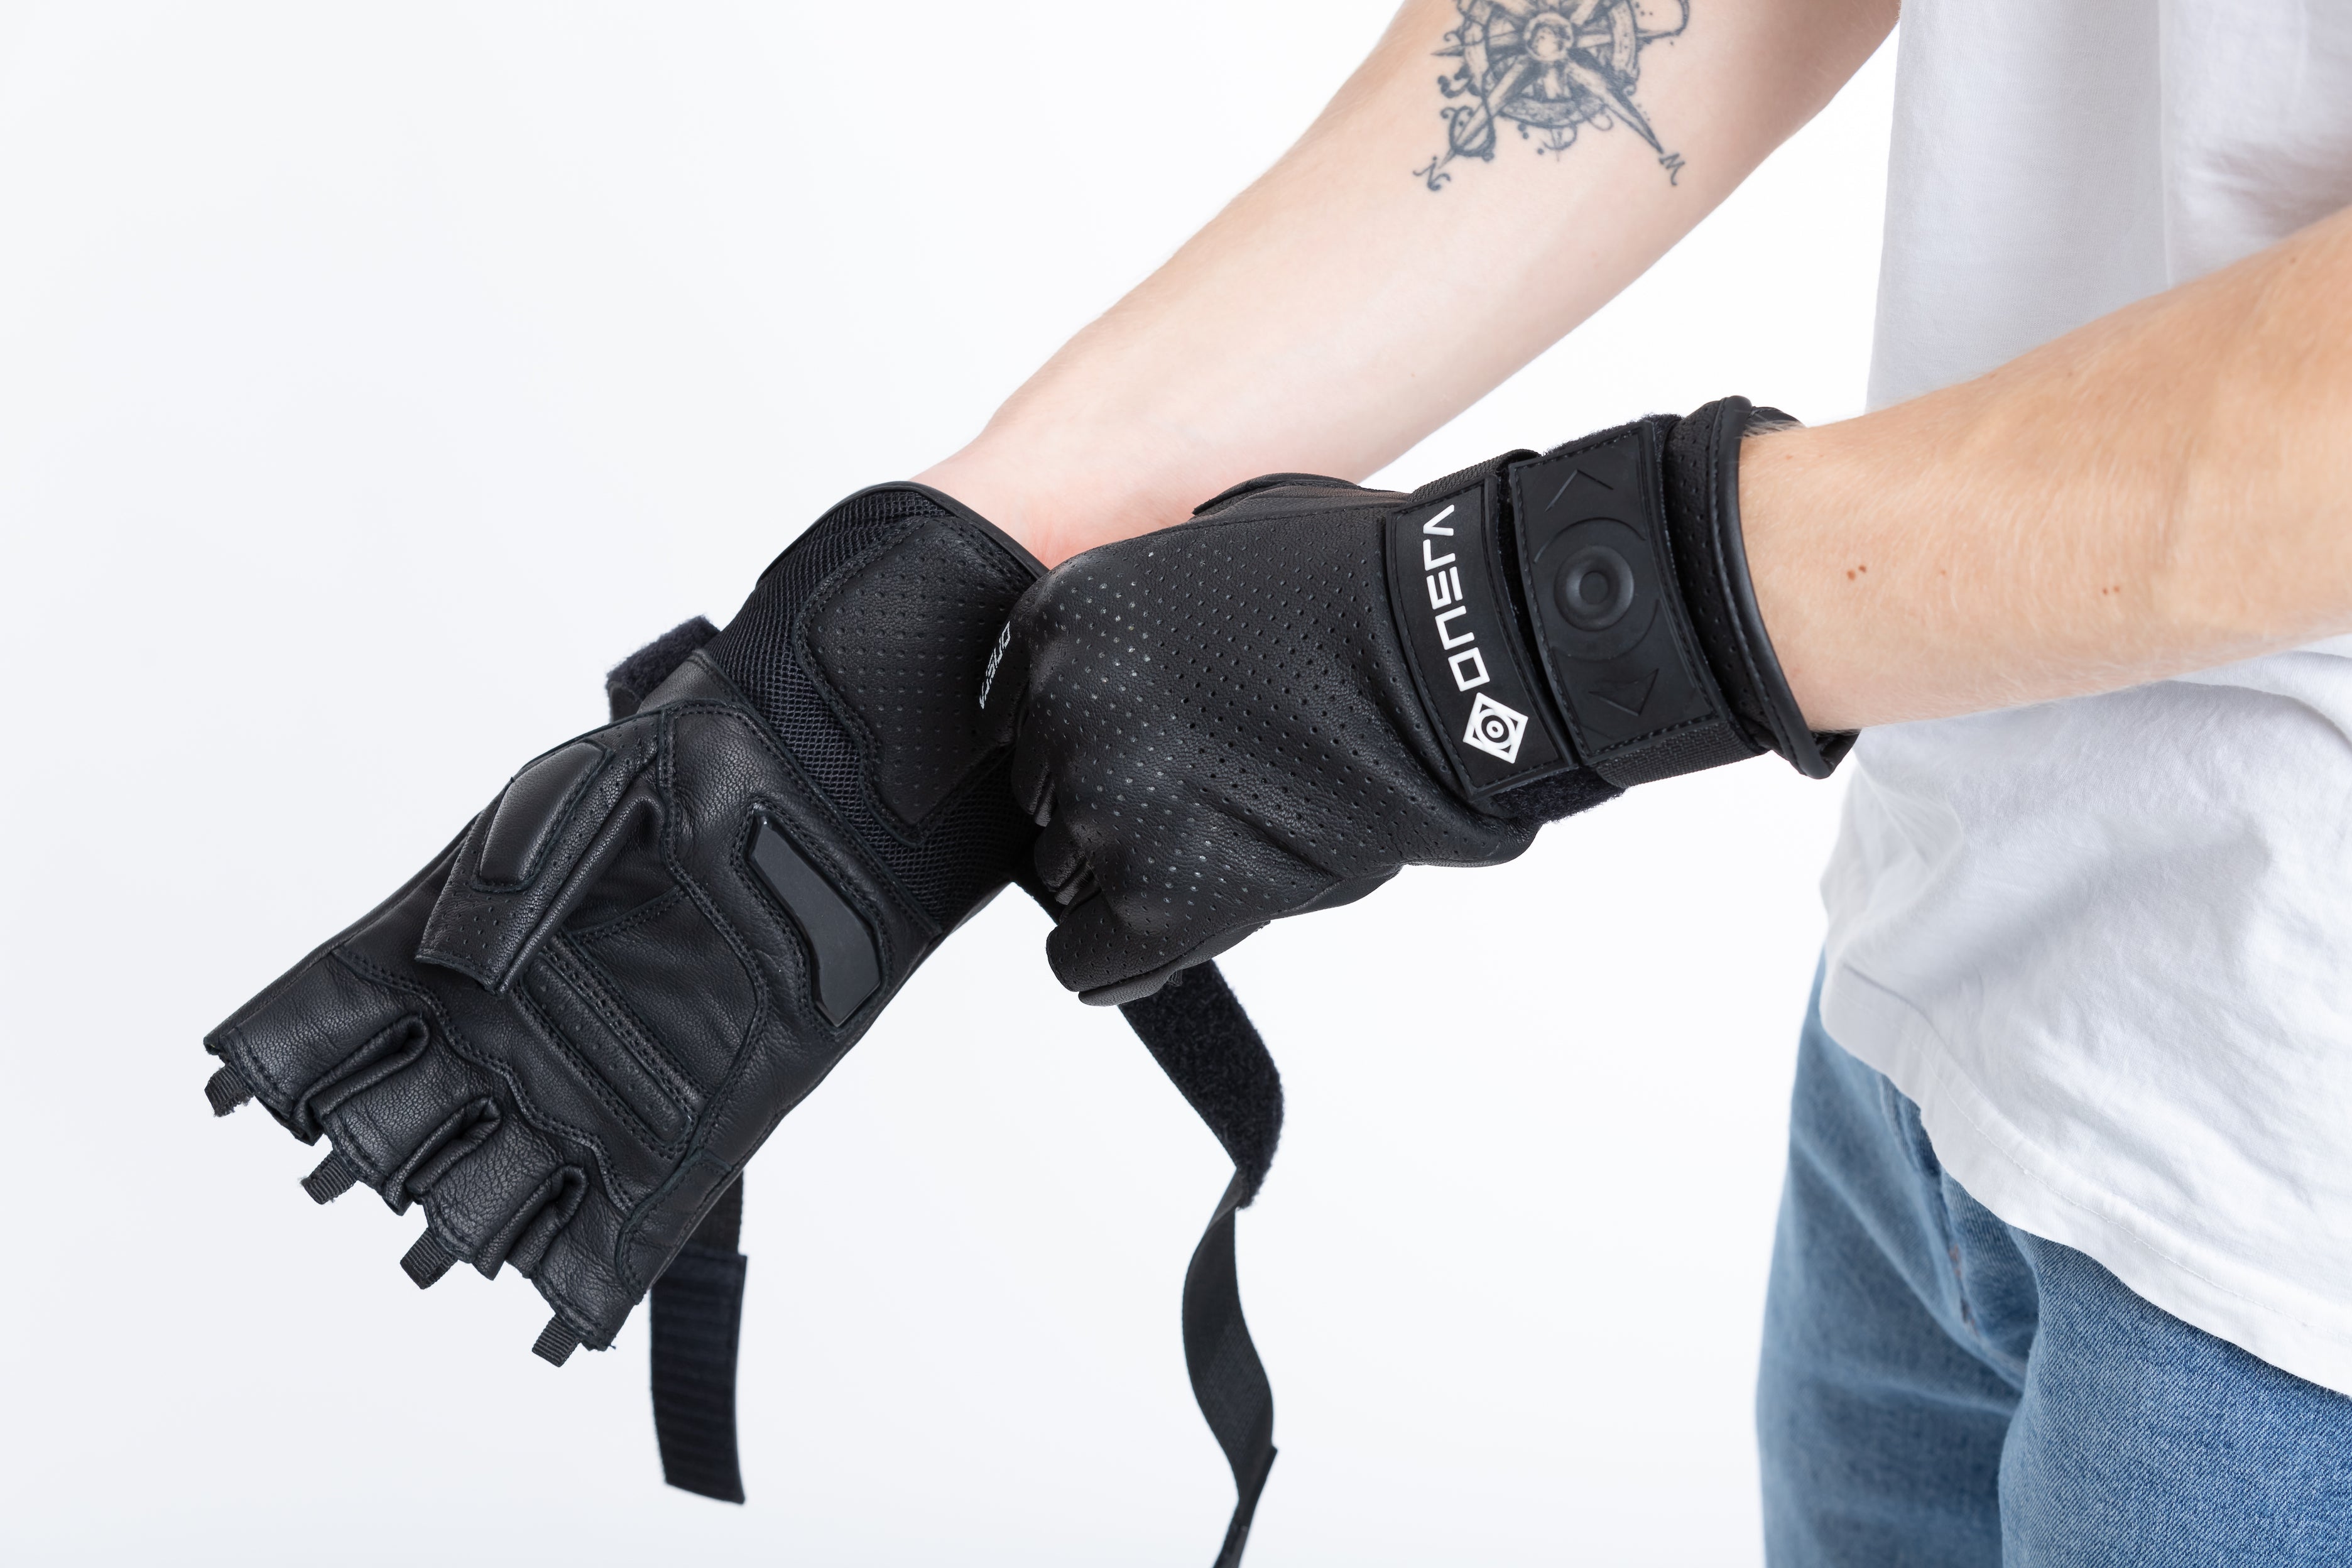 ONSRA E-SKATE Gloves